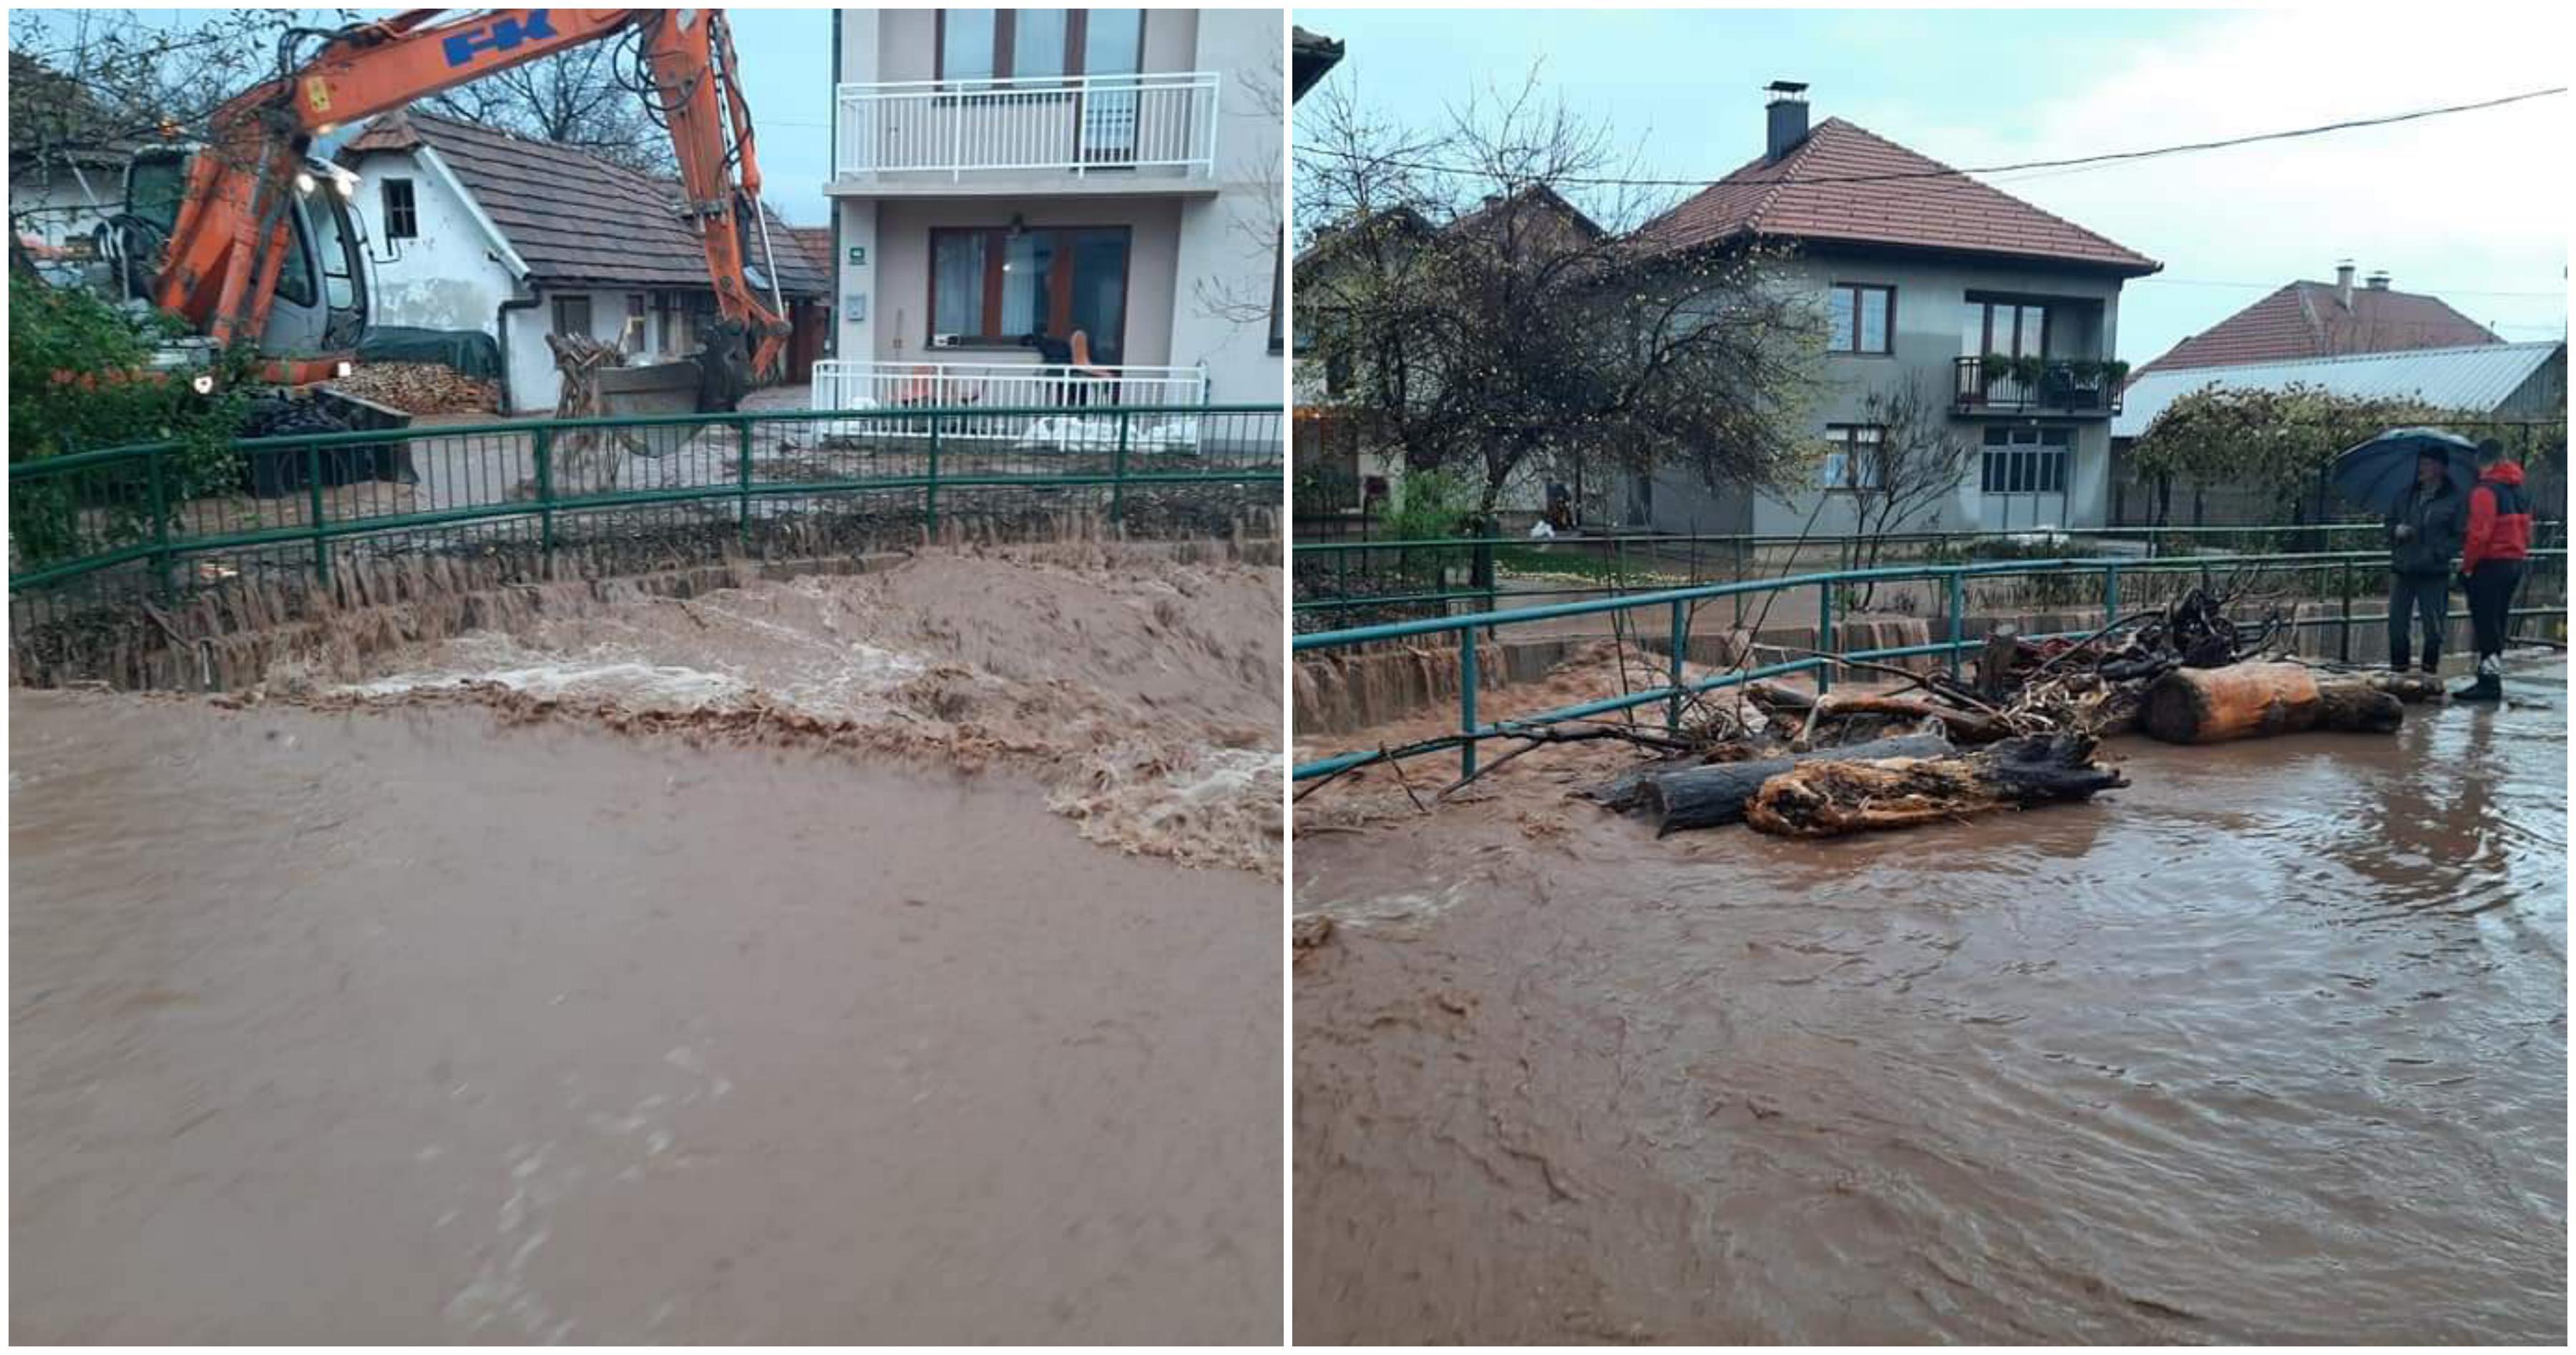 Dramatično stanje u Butmiru: Most spasa pod vodom, Željeznica divlja, voda sve bliže kućama